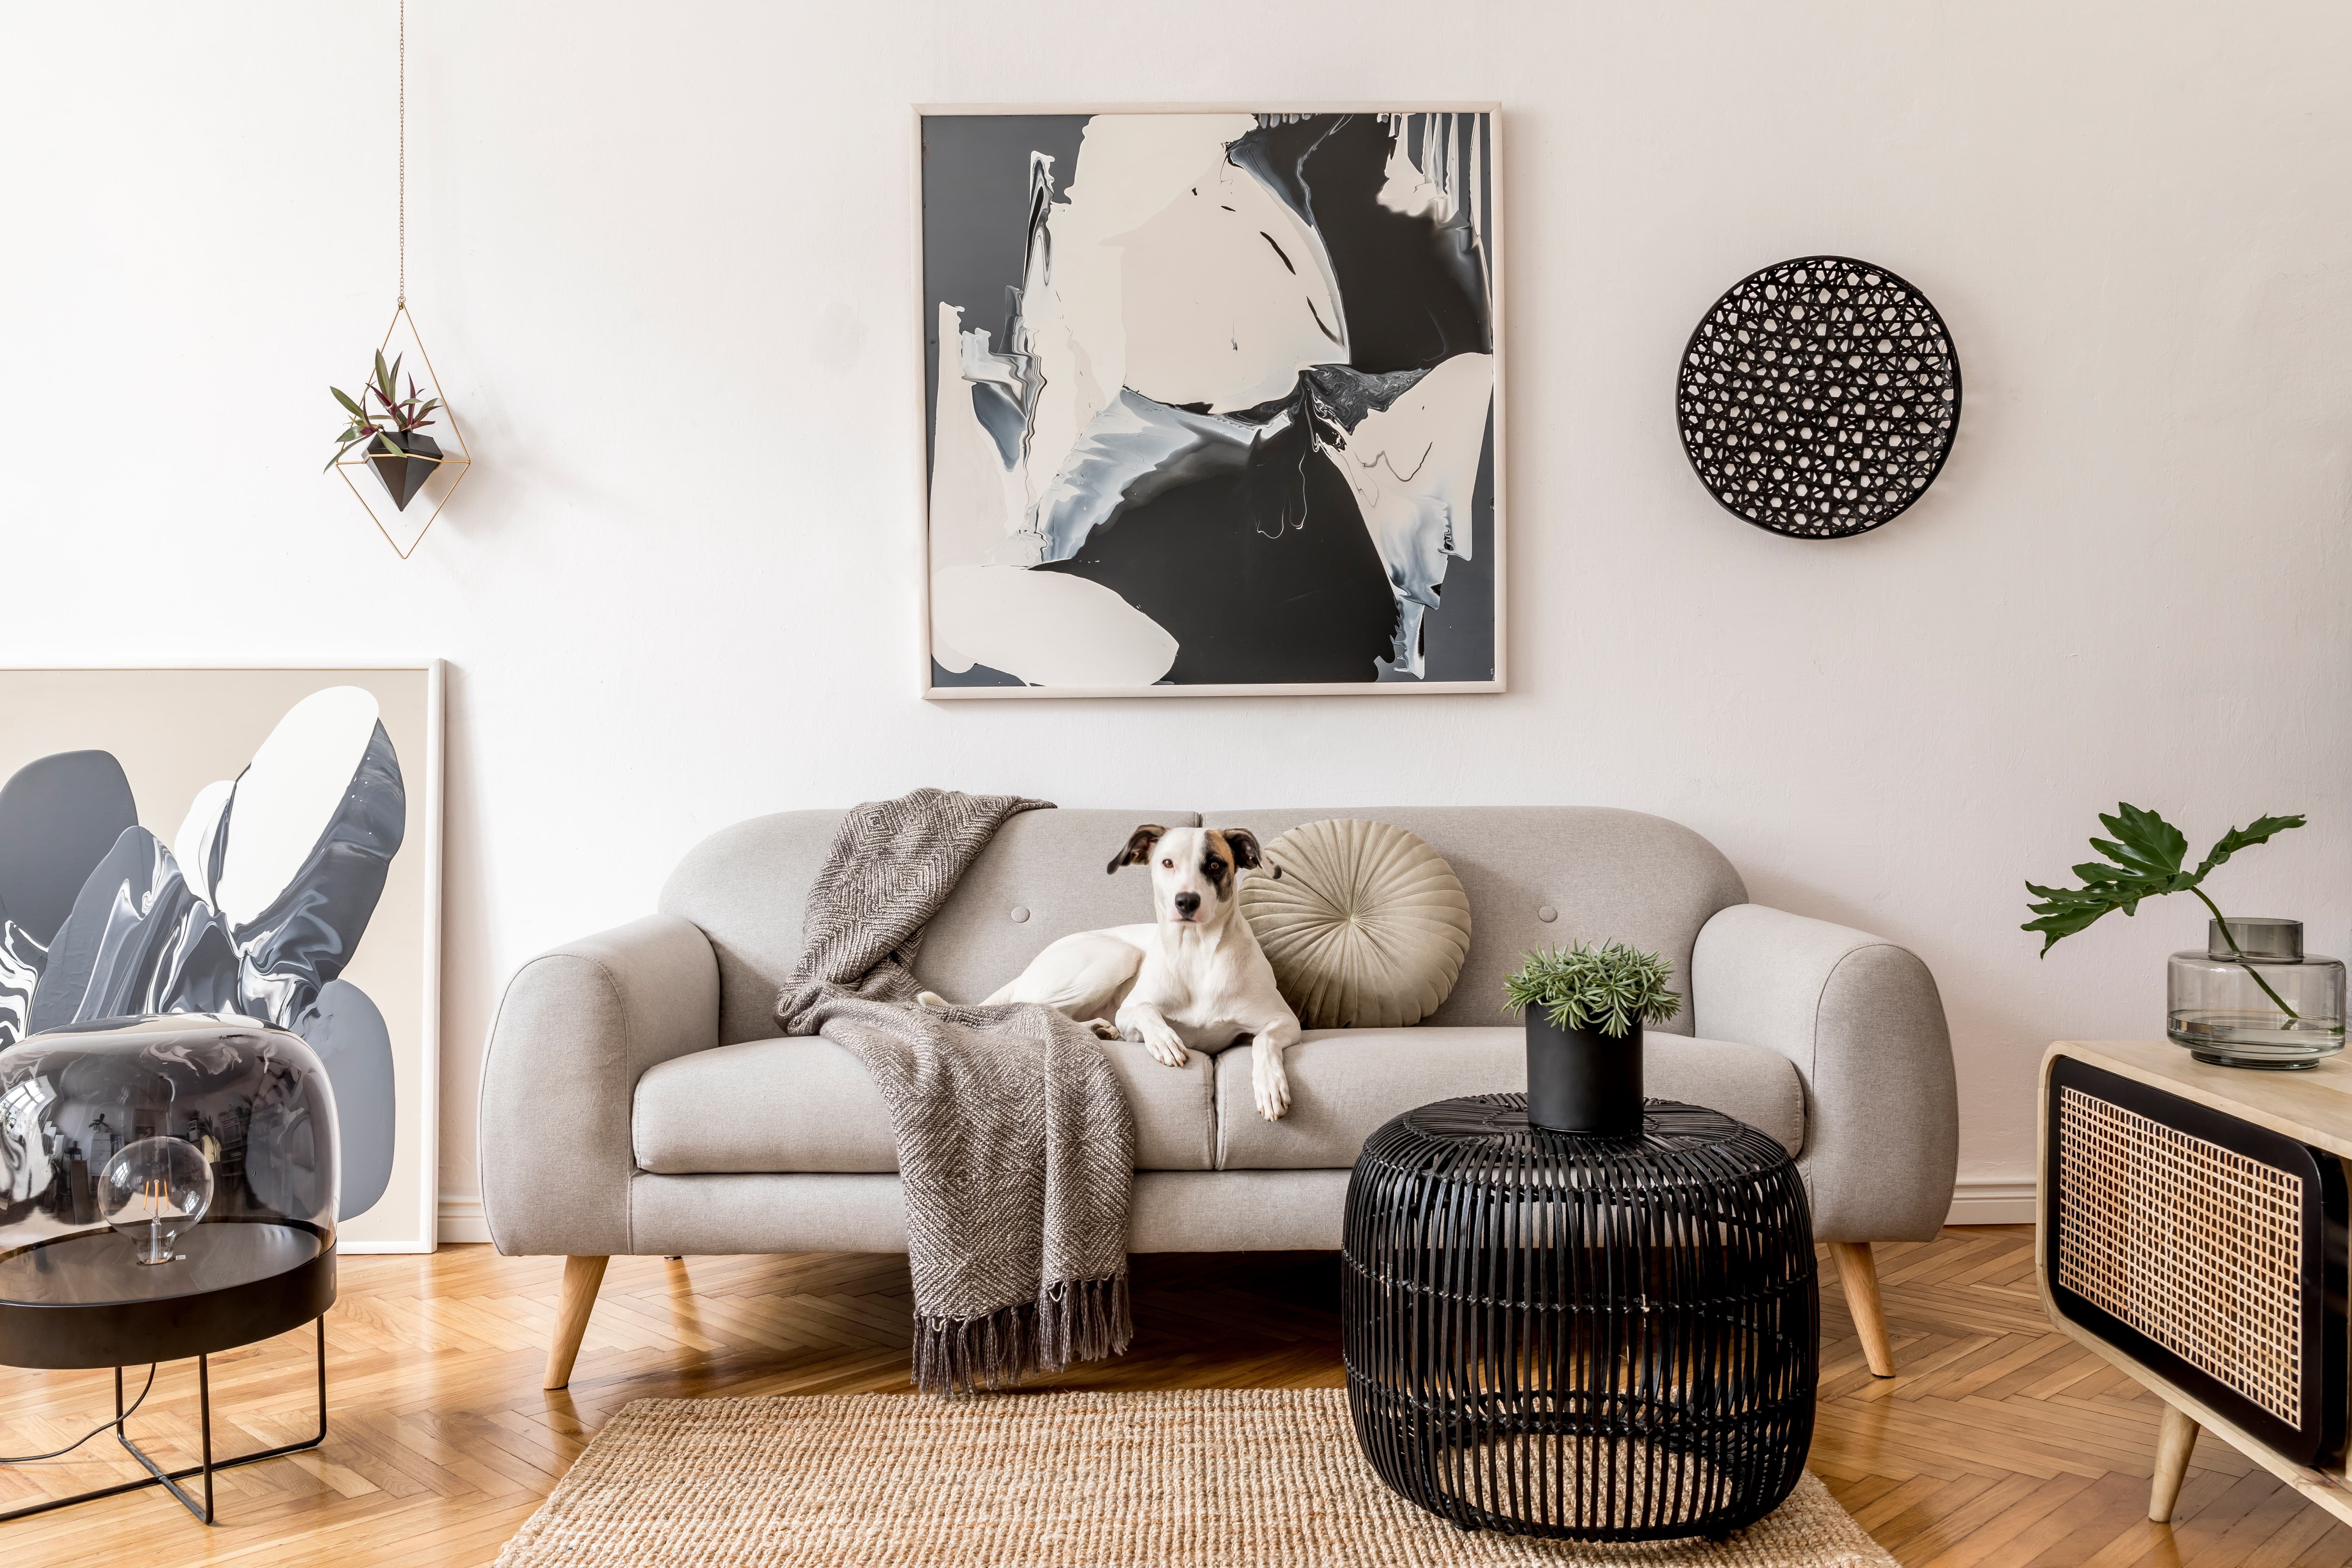 Imagem de um cachorro branco e preto sentado em um sofá com almofada e manta, na sala também há outros móveis e quadros.